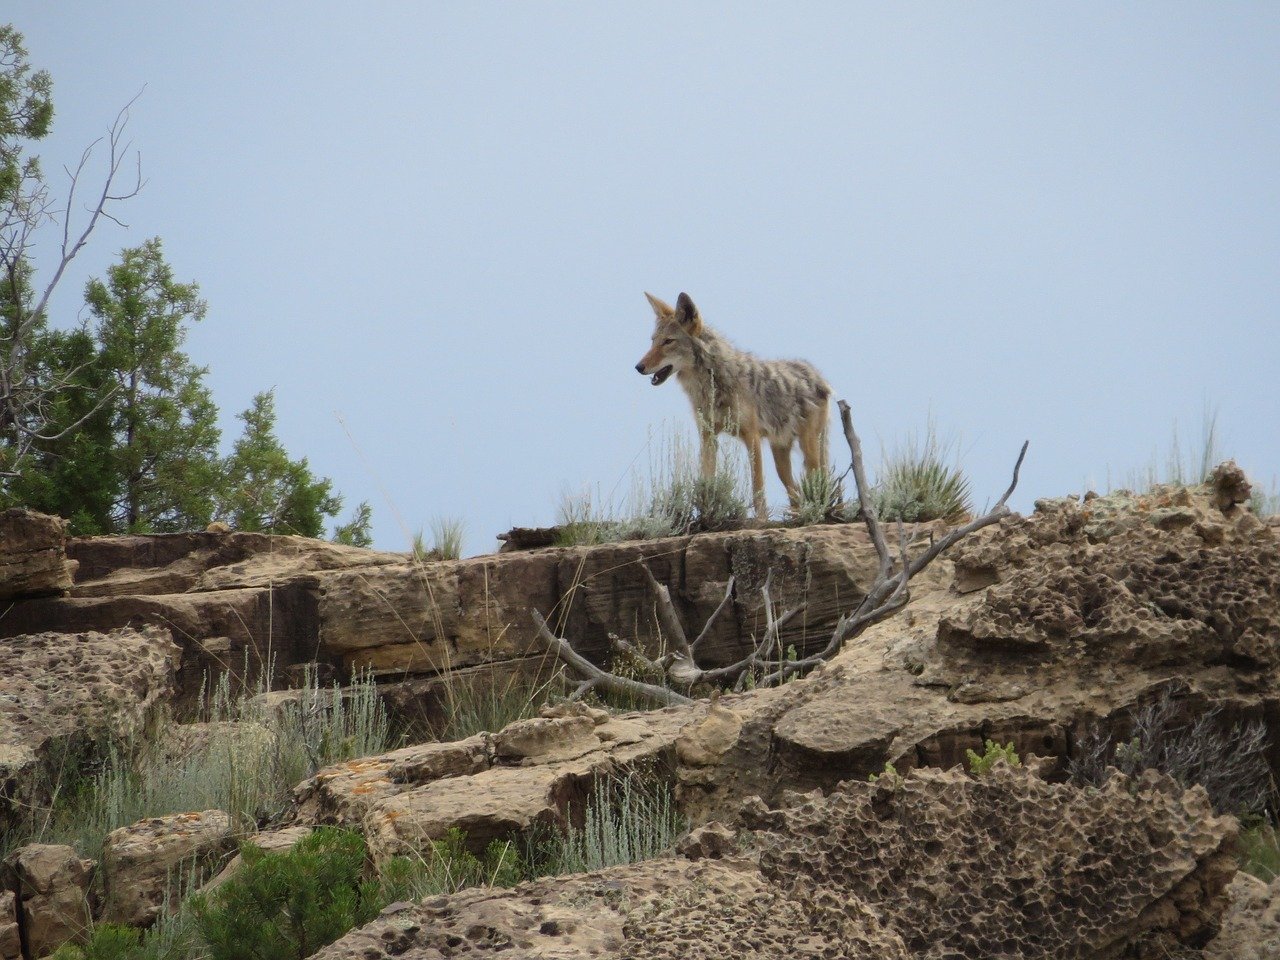 Uptick in Coyote Sightings